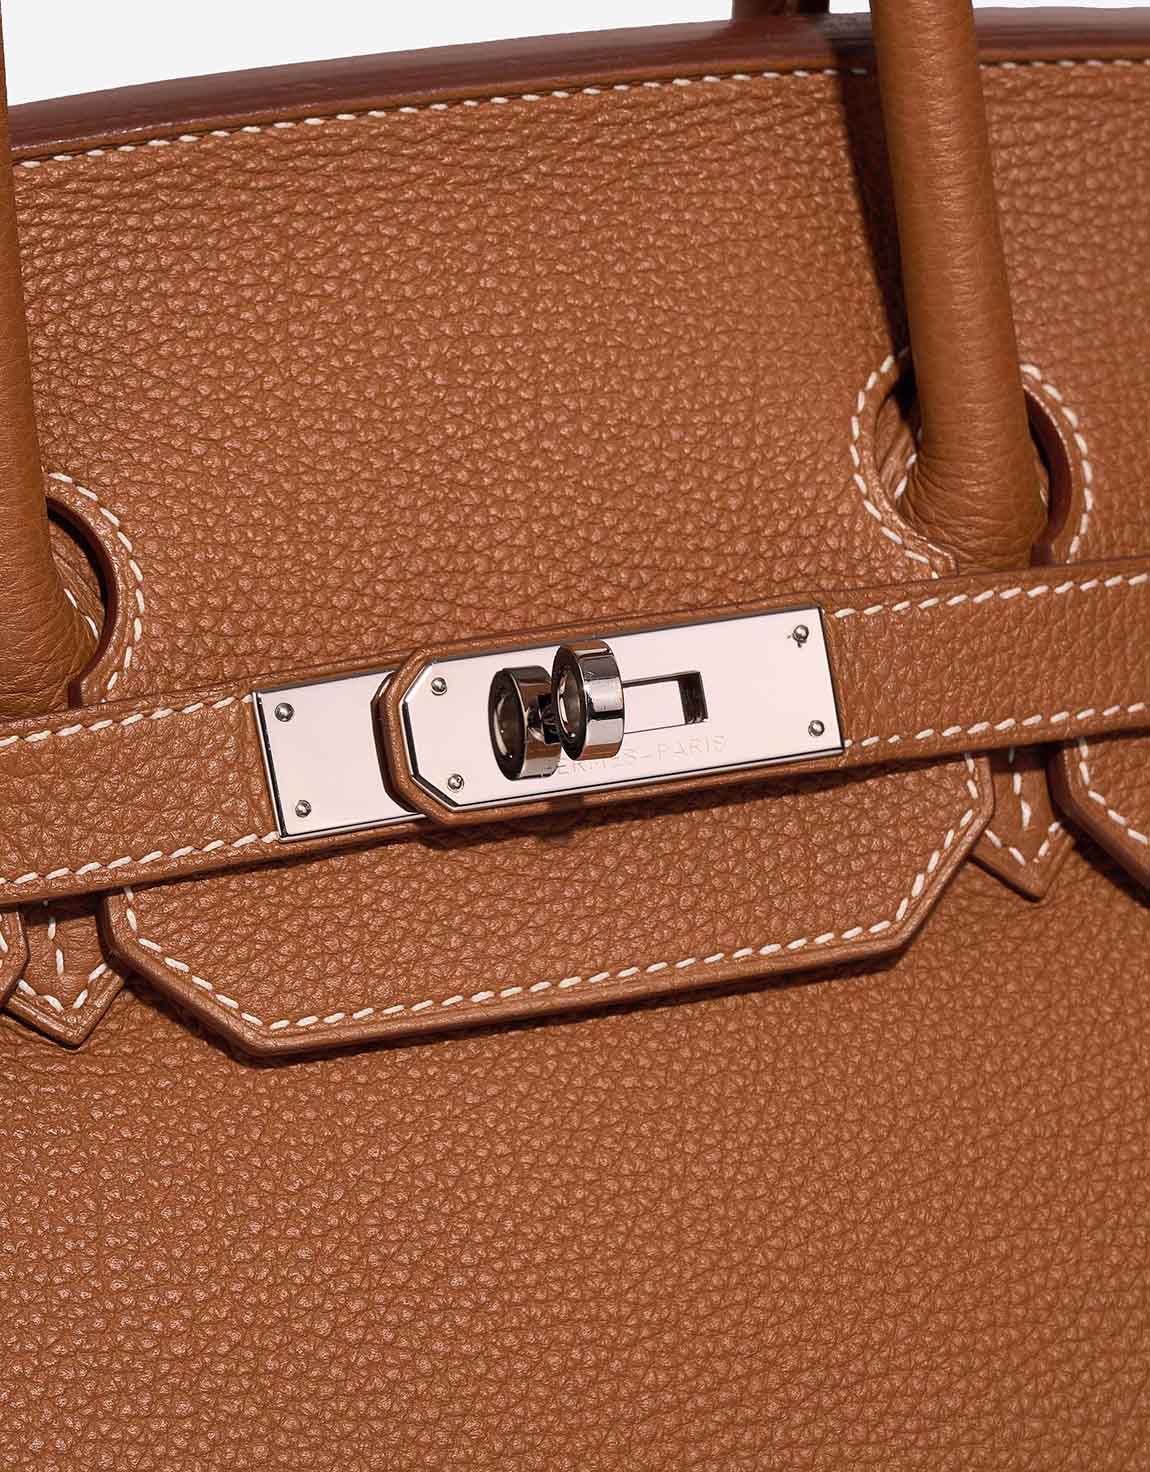 Hermès Birkin 35 Togo Gold Closing System | Sell your designer bag